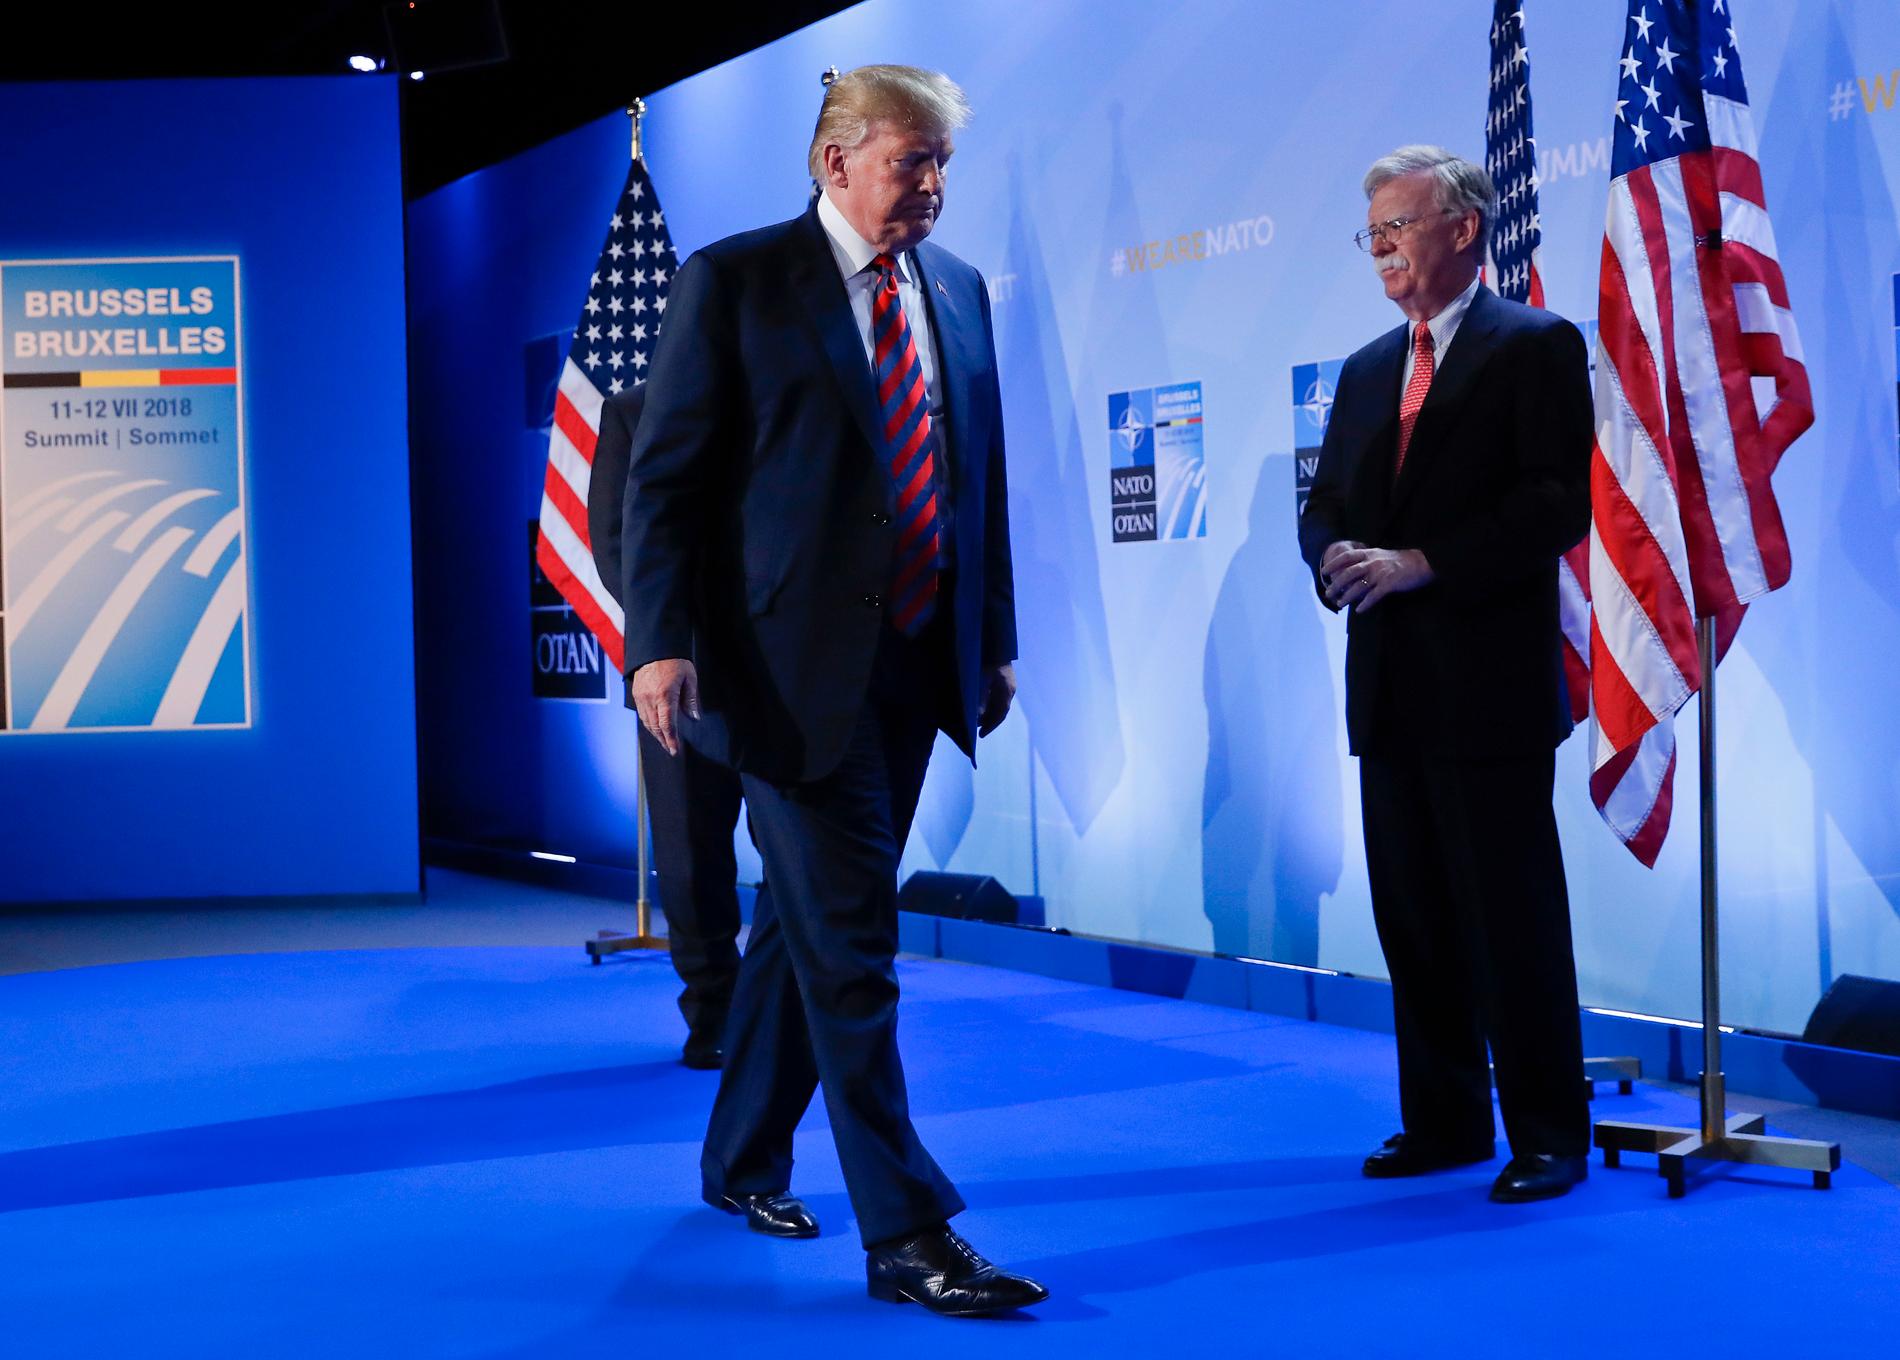 USA:s president Donald Trump tillsammans med sin dåvarande nationelle säkerhetsrådgivare John Bolton vid ett Natotoppmöte sommaren 2018.